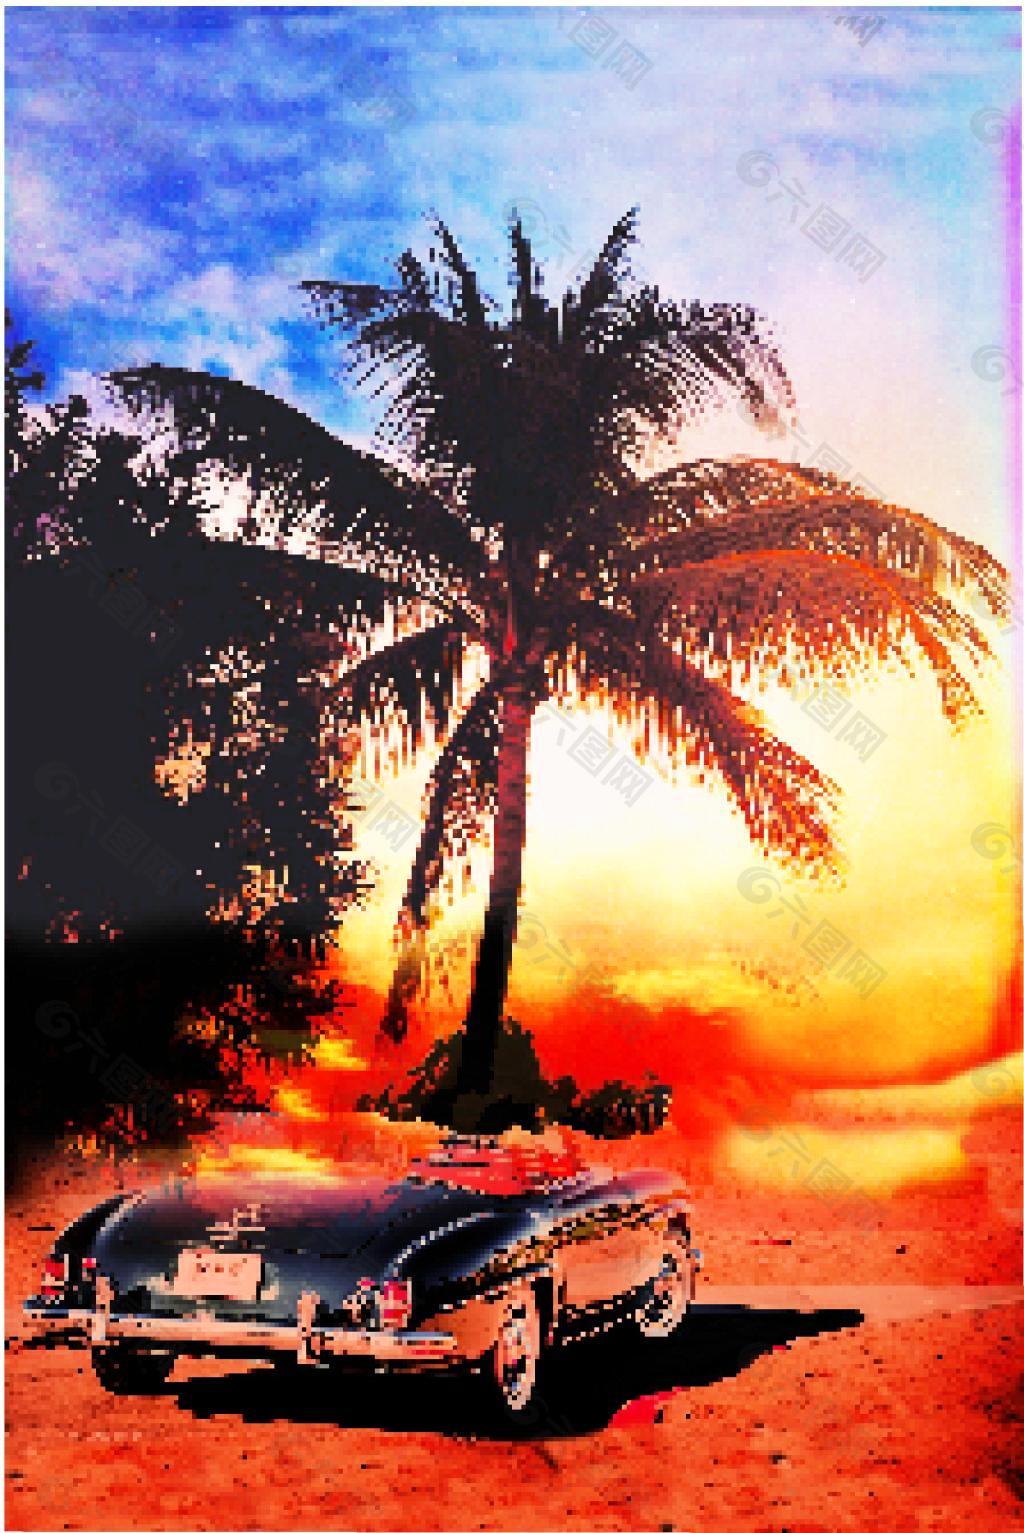 椰树 汽车 夏威夷风情